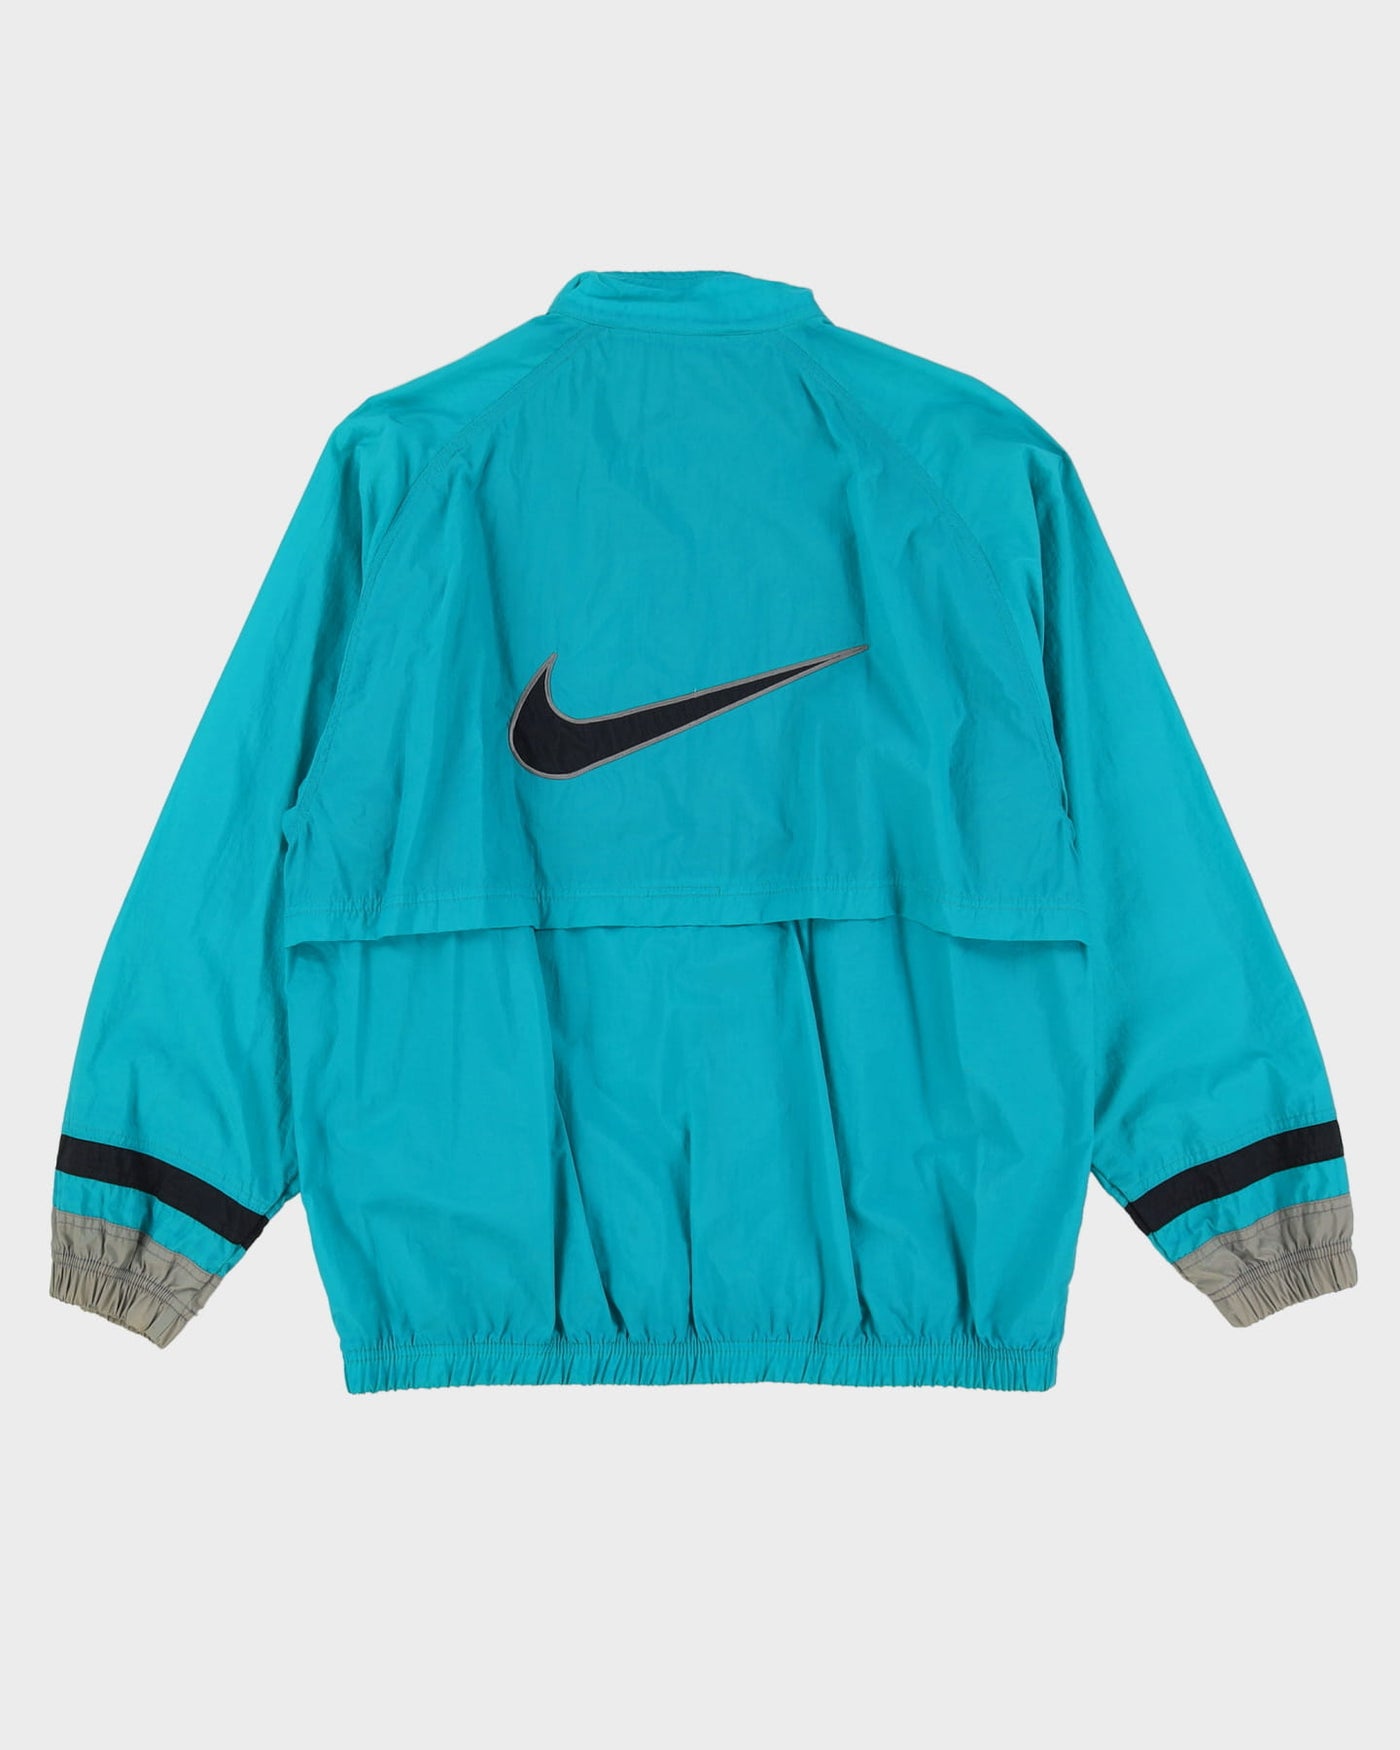 90s Nike Turquoise Windbreaker Jacket - L